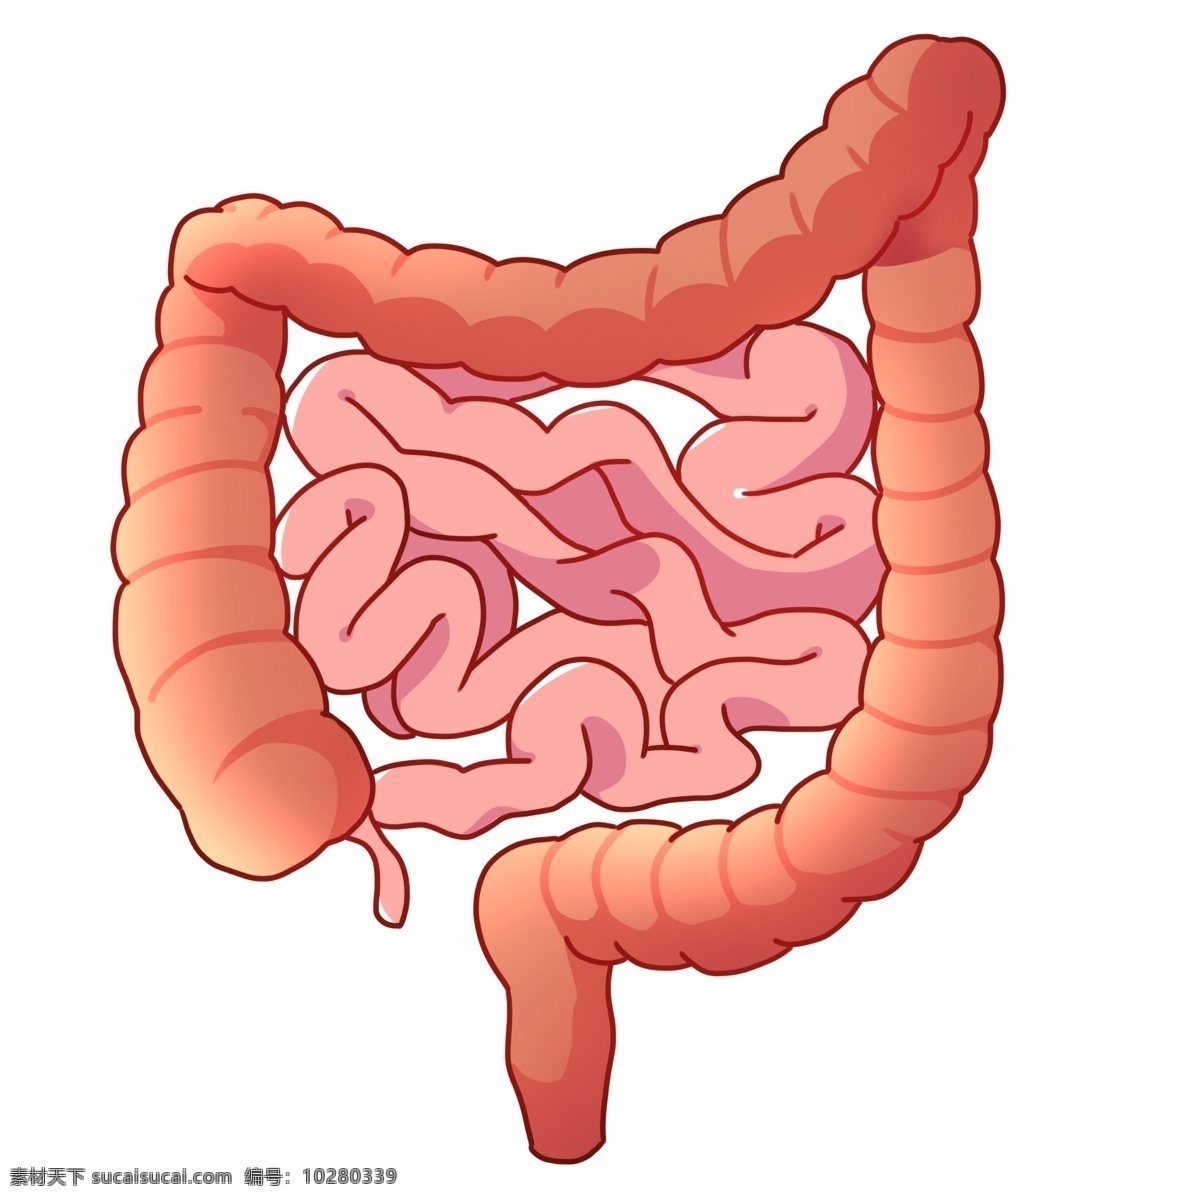 红色 人体 器官 肠子 器官效果图 人体器官插画 动漫动画 大肠 小肠 吸收 营养 红色的大肠 消化系统